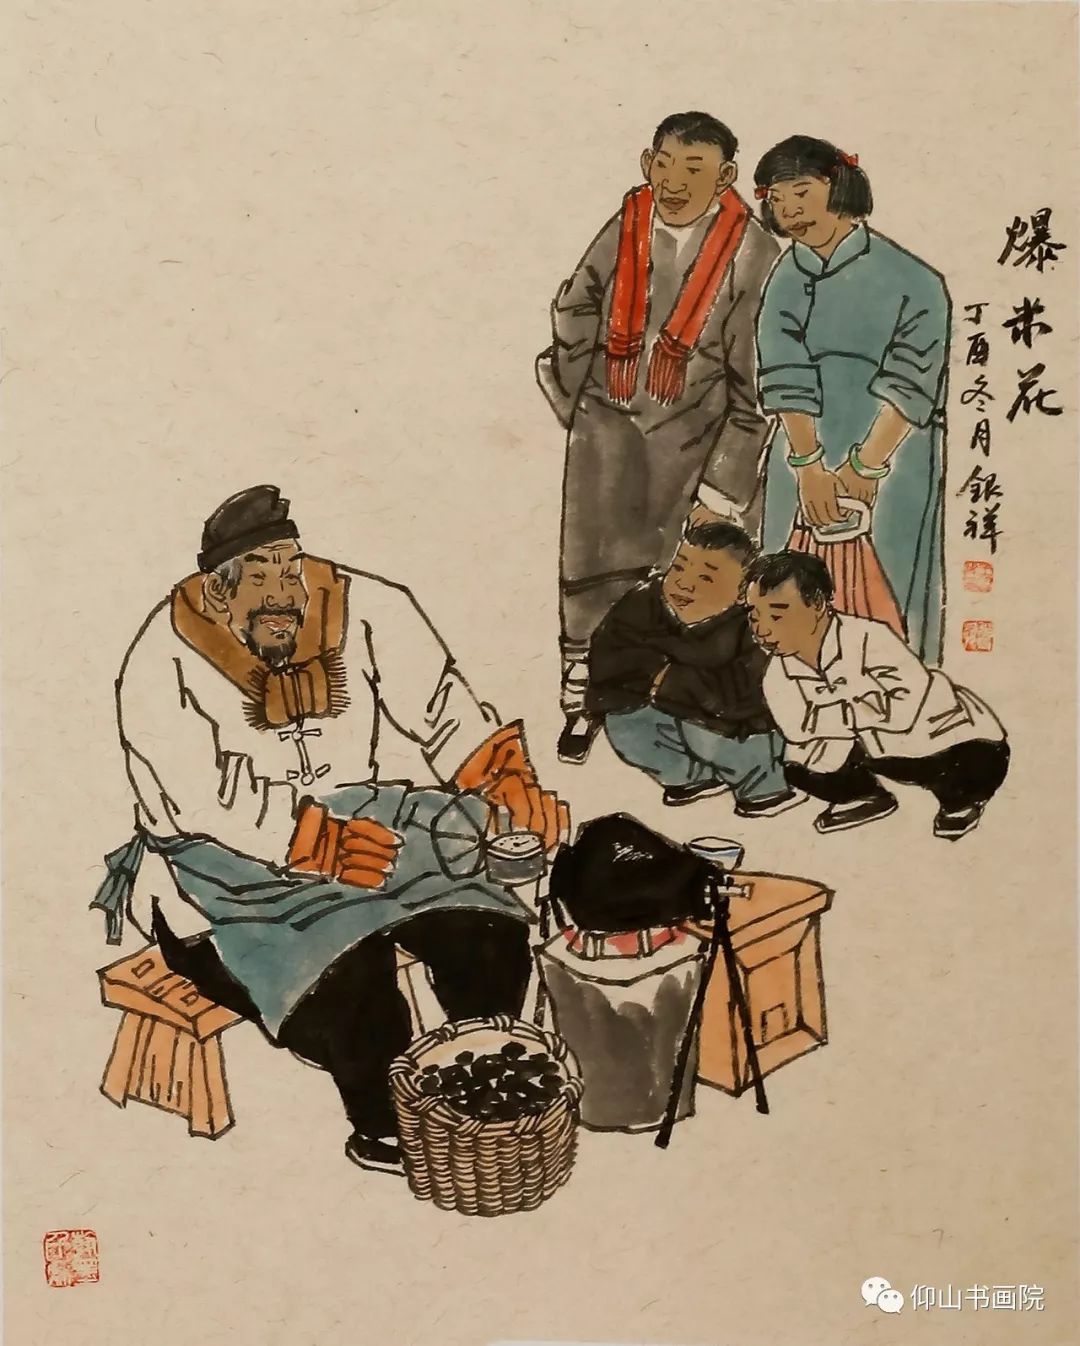 老山老兵王银祥笔下的老北京人物画